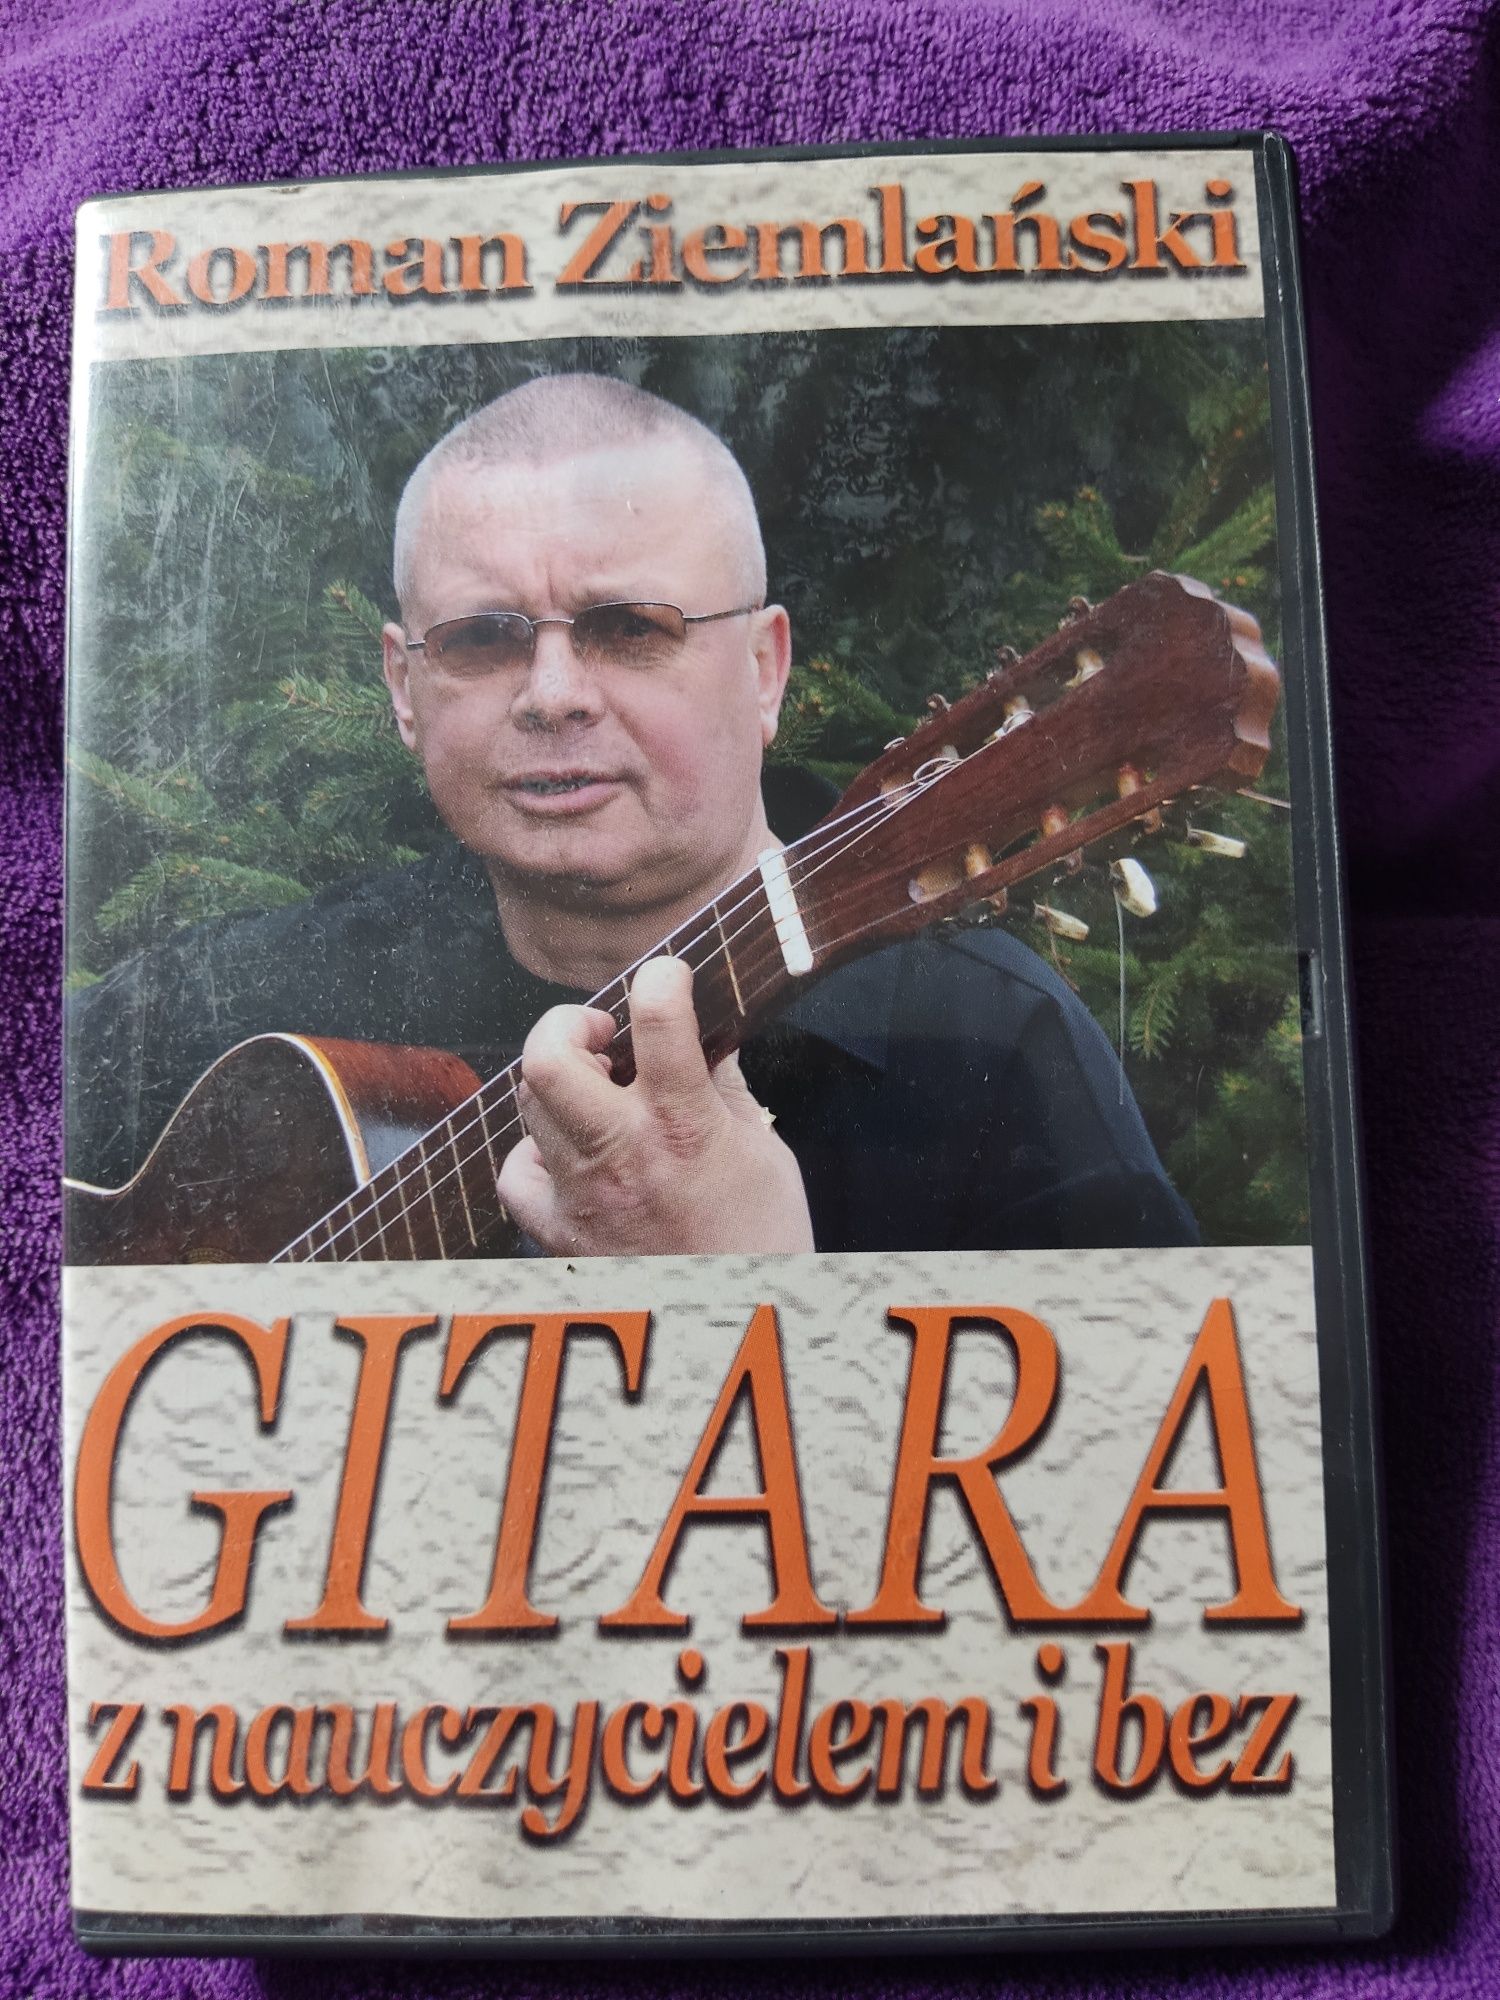 Gitara z nauczycielem lub bez Roman Ziemlański. Płyta dvd